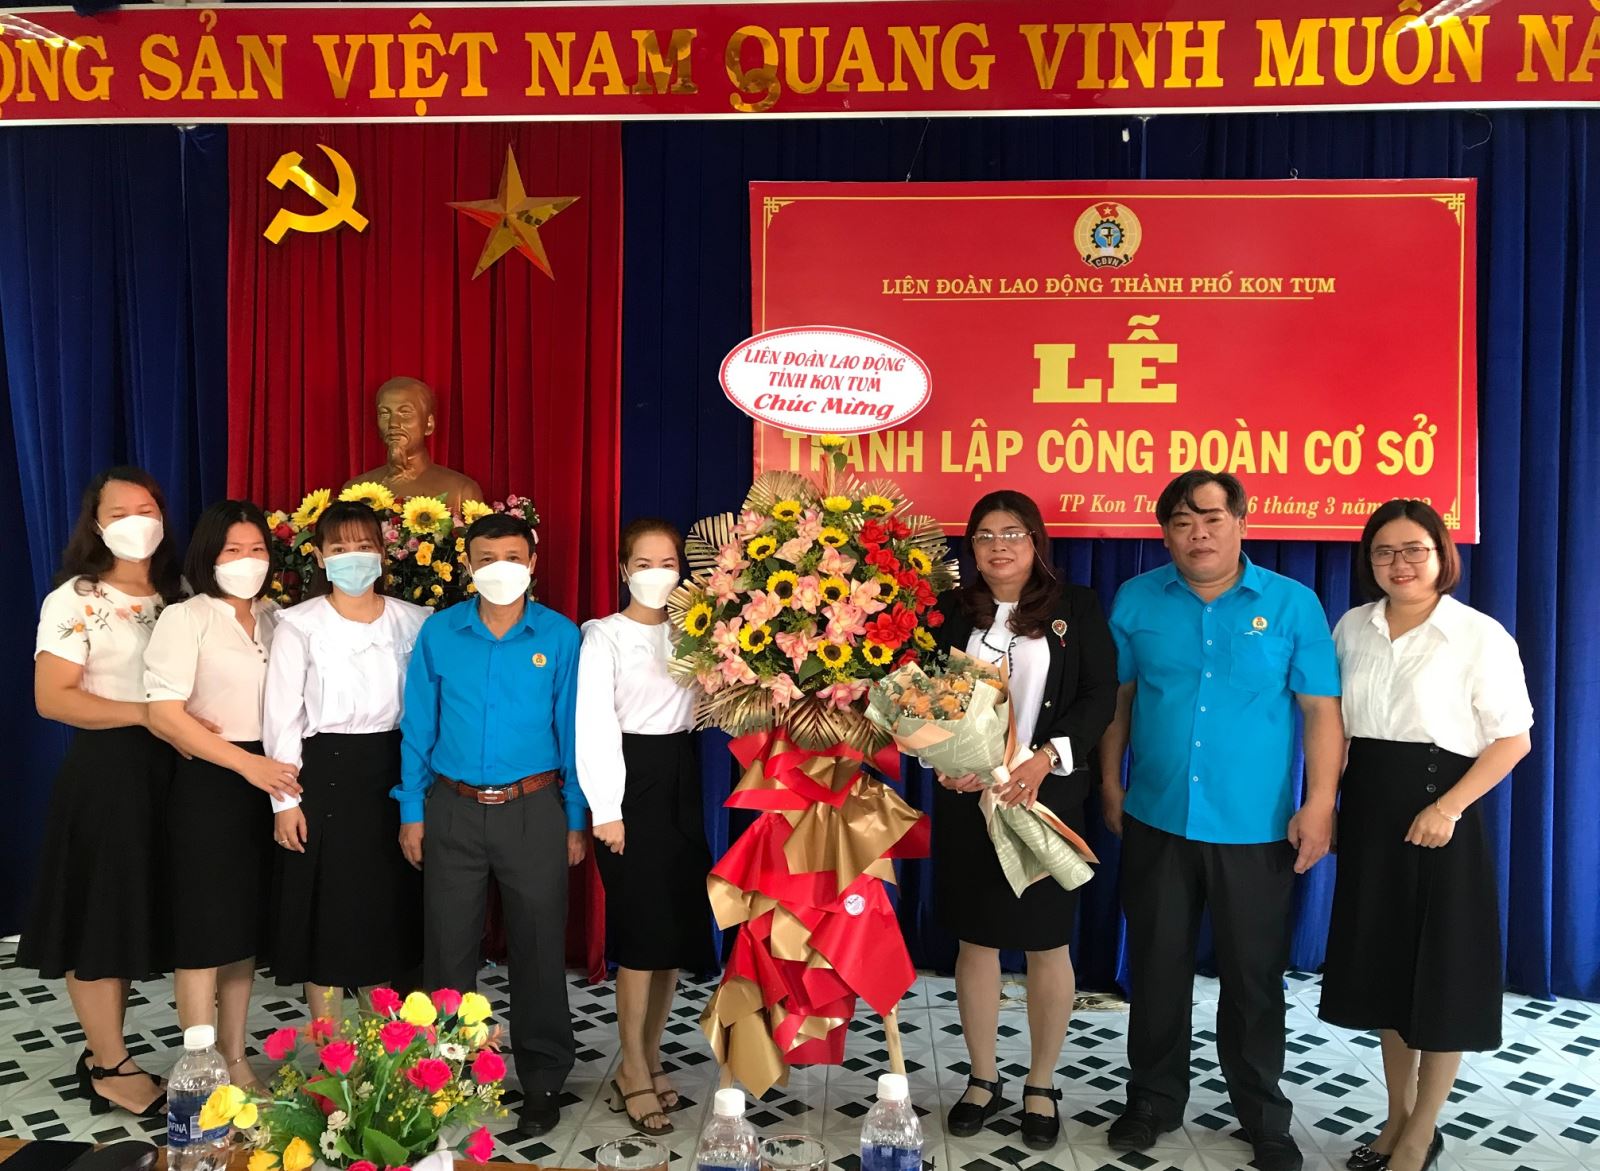 Liên đoàn lao động thành phố Kon Tum thành lập Công đoàn cơ sở và kết nạp mới 17 đoàn viên